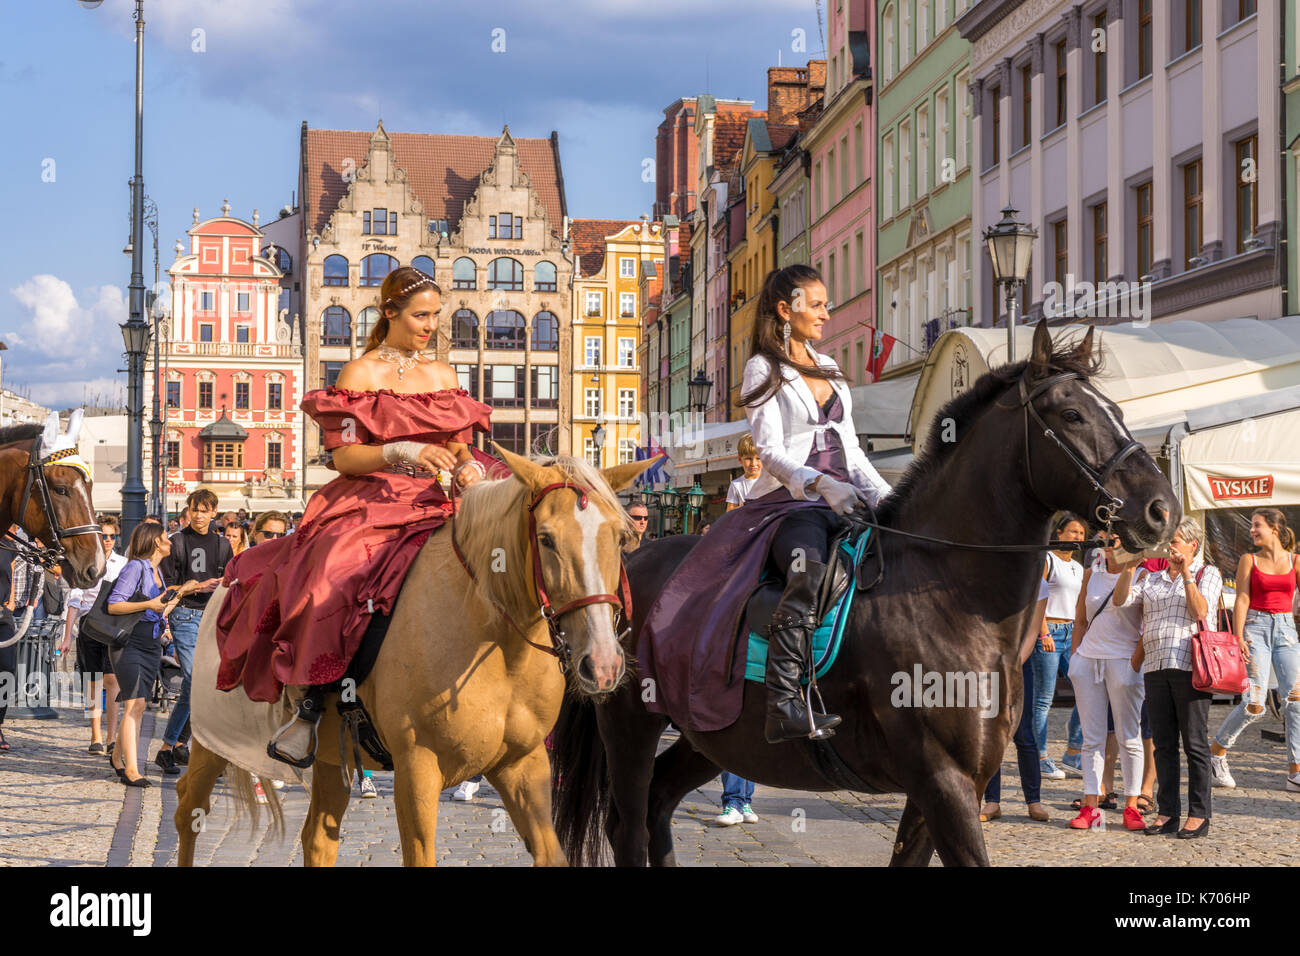 Zwei Frauen auf Pferde während einer polnischen Folklore Parade im Alten Markt im Jahr 2017 in Breslau, Polen Stockfoto